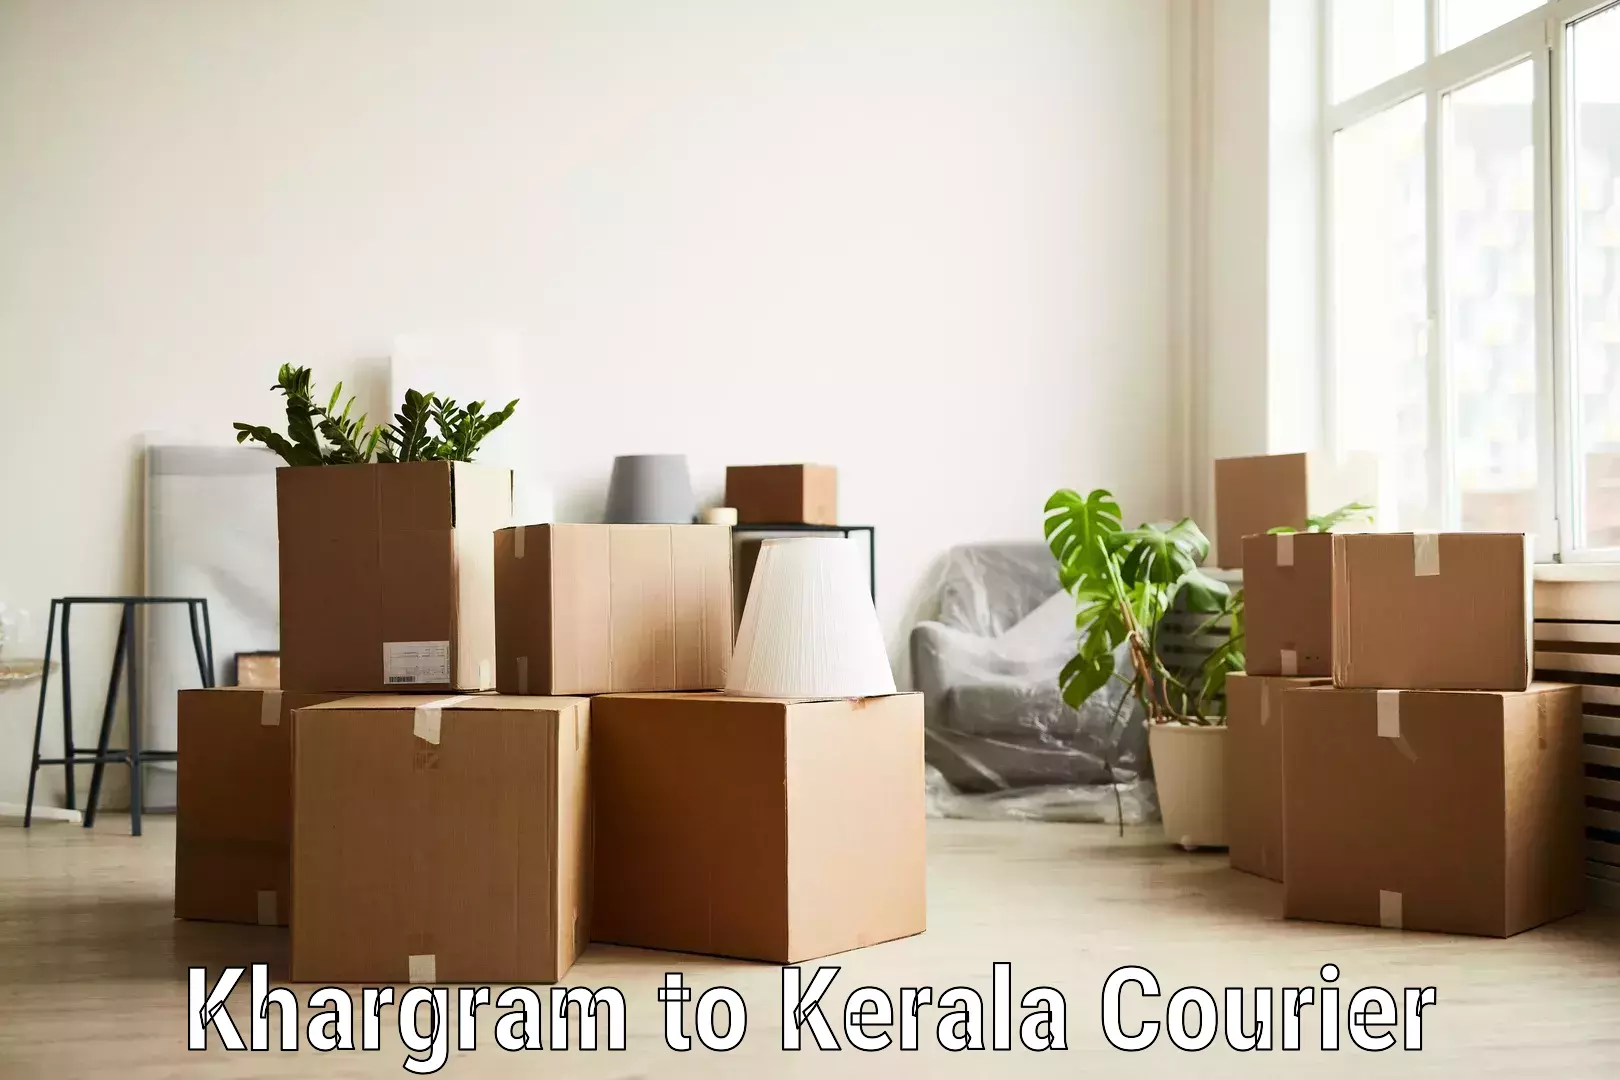 High-capacity parcel service Khargram to Karukachal